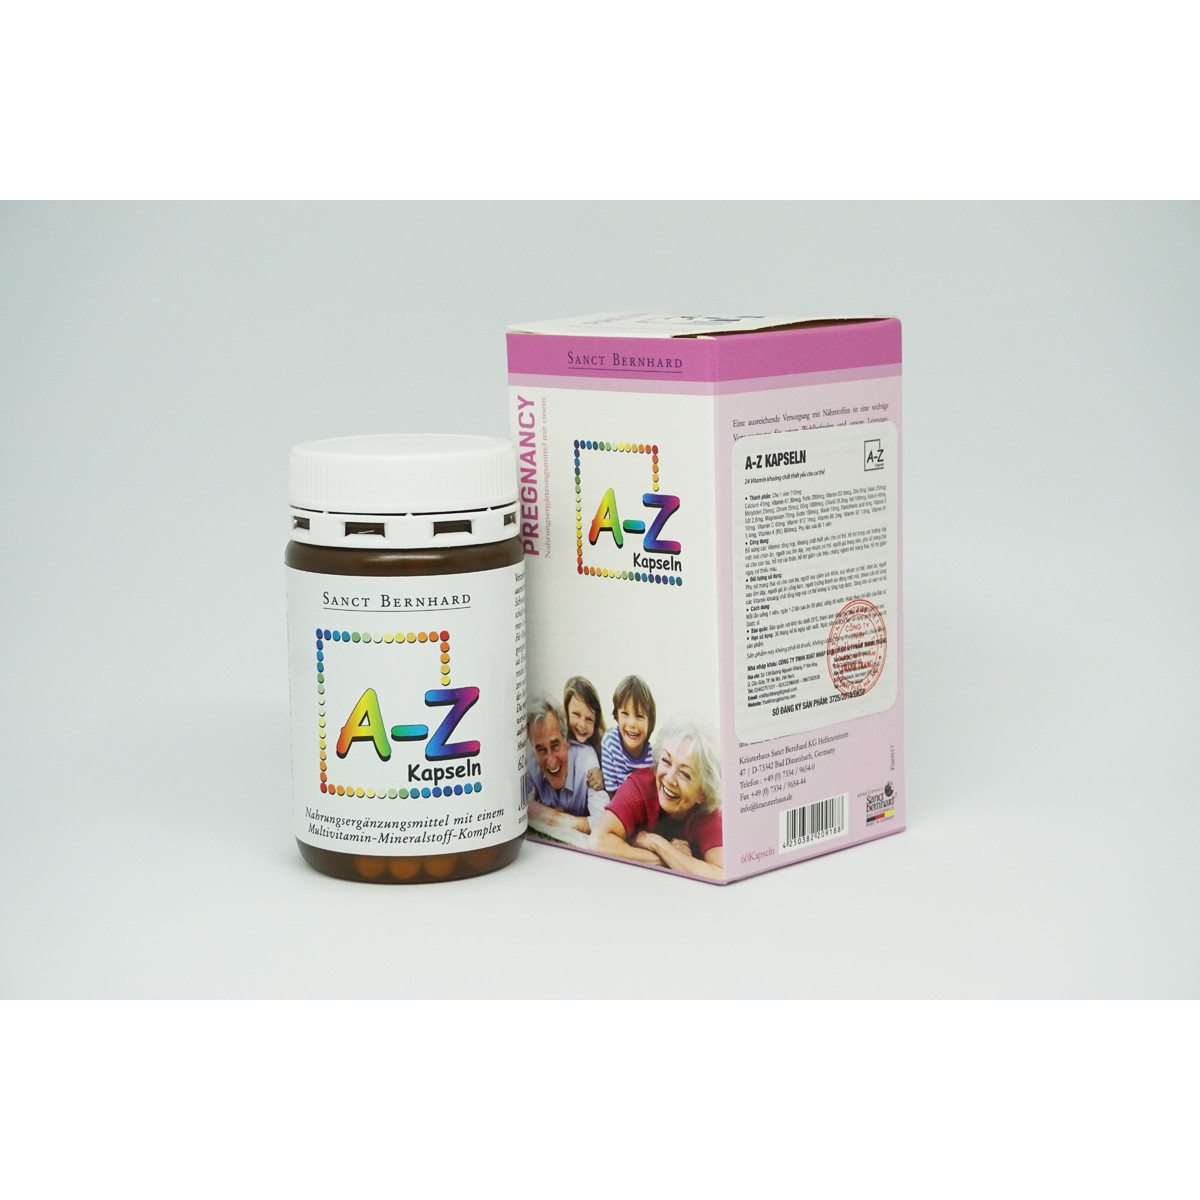 A-Z Kapseln -  Viên bổ tổng hợp 24 Vitamin và khoáng chất  hỗ trợ cải thiện  tình trạng thiếu các vitamin và khoáng chất thiết yếu cho người ốm sau ốm dậy, phụ nữ mang thai, hỗ trợ giảm nguy cơ thiếu máu.  